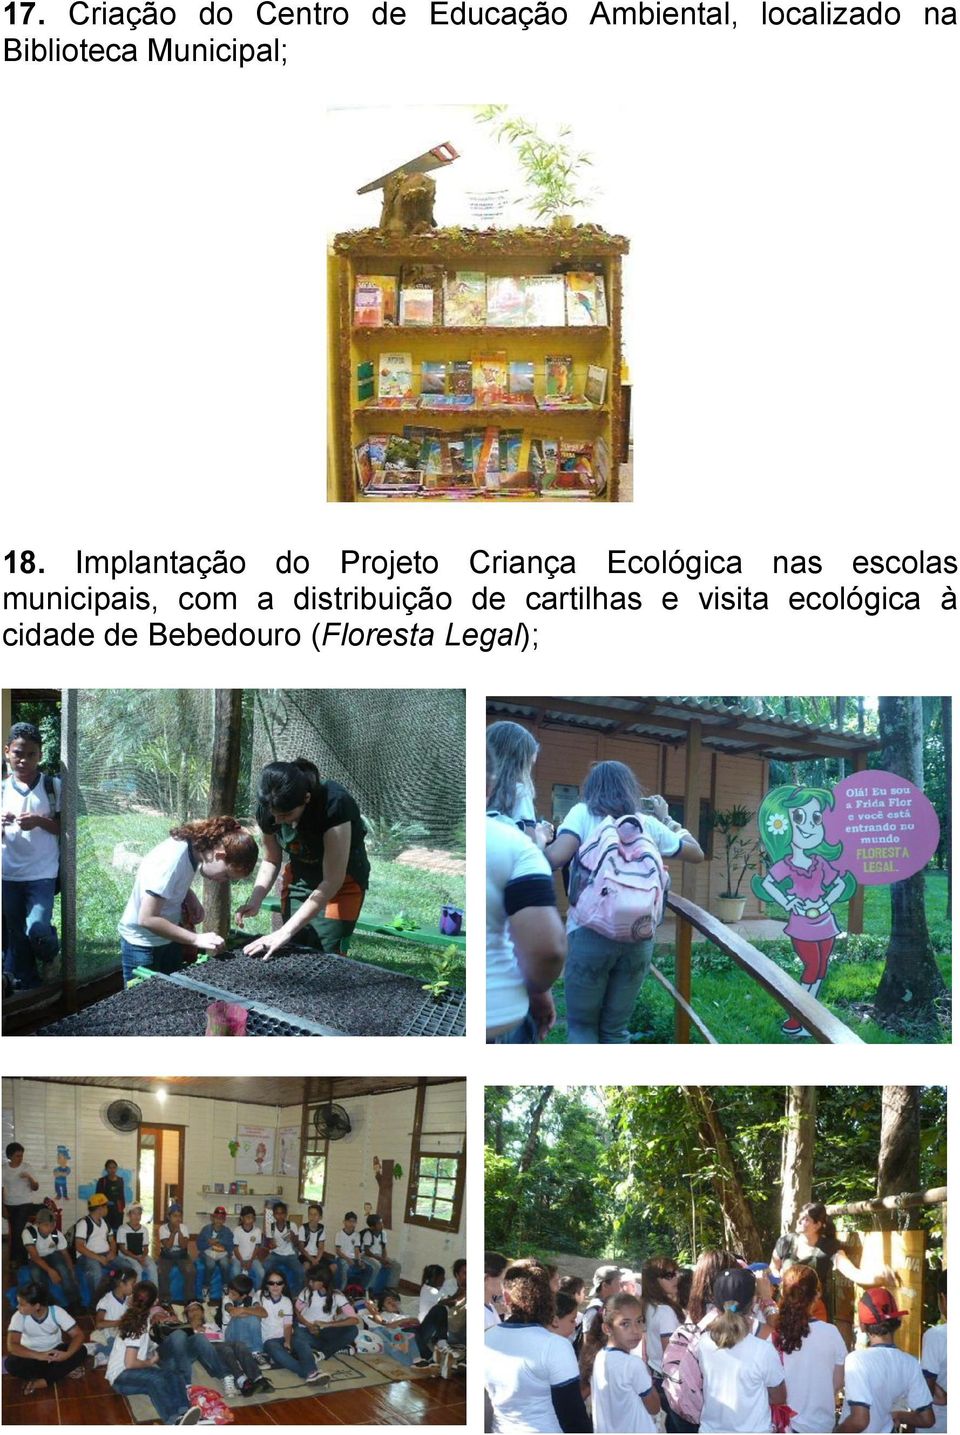 Implantação do Projeto Criança Ecológica nas escolas